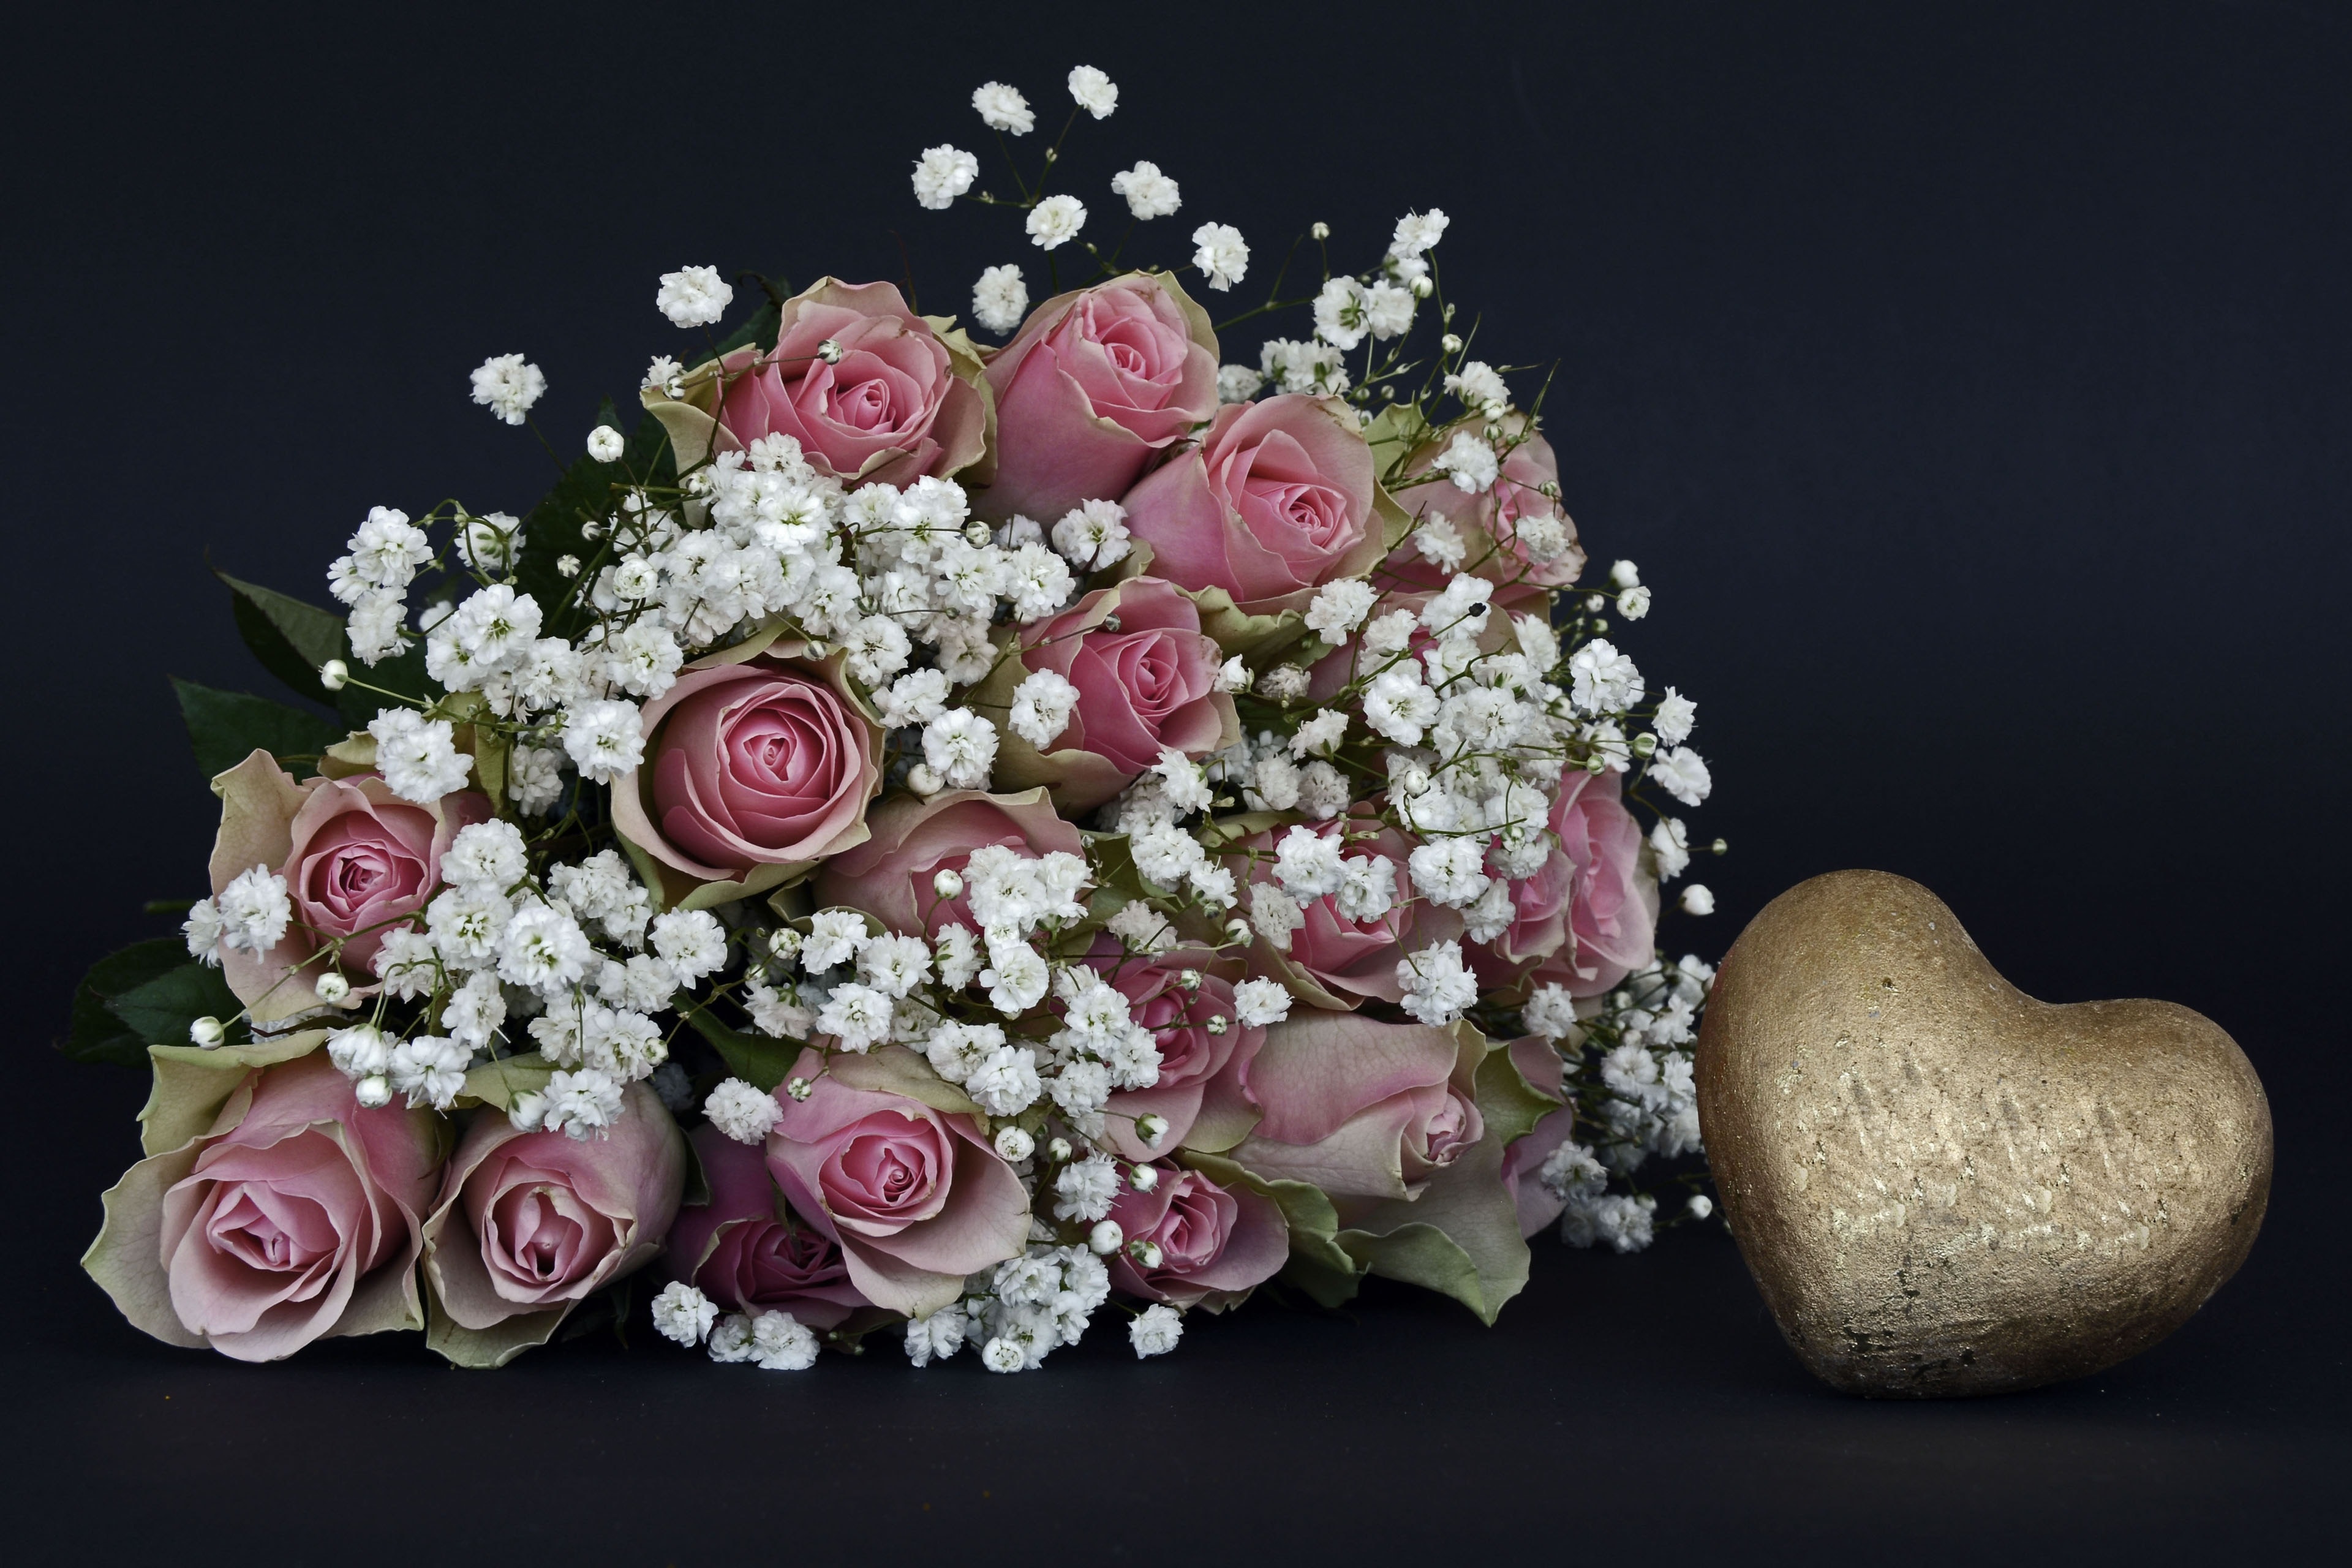 Rose Flower, Roses, Pink, White, Flowers, studio shot, black background